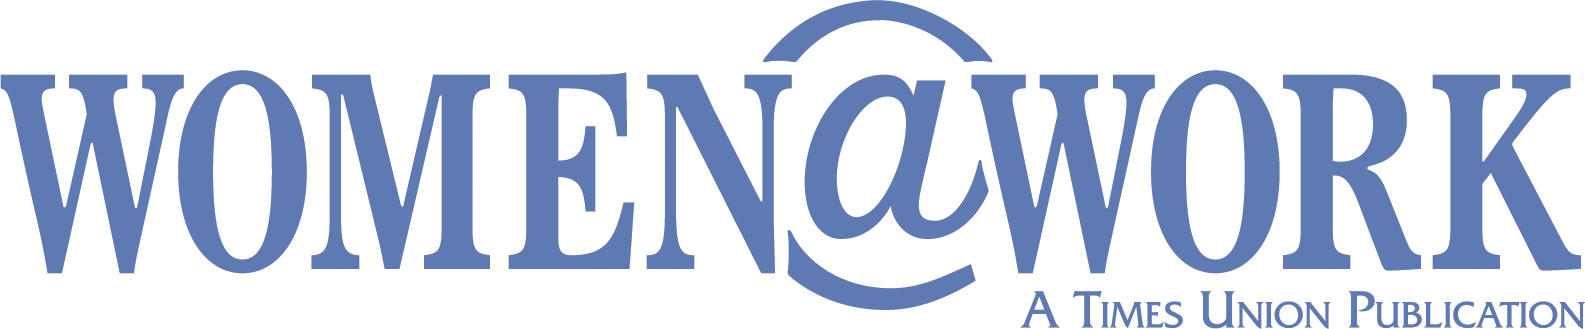 TimesUnion WatW logo blue.TUtag 2019